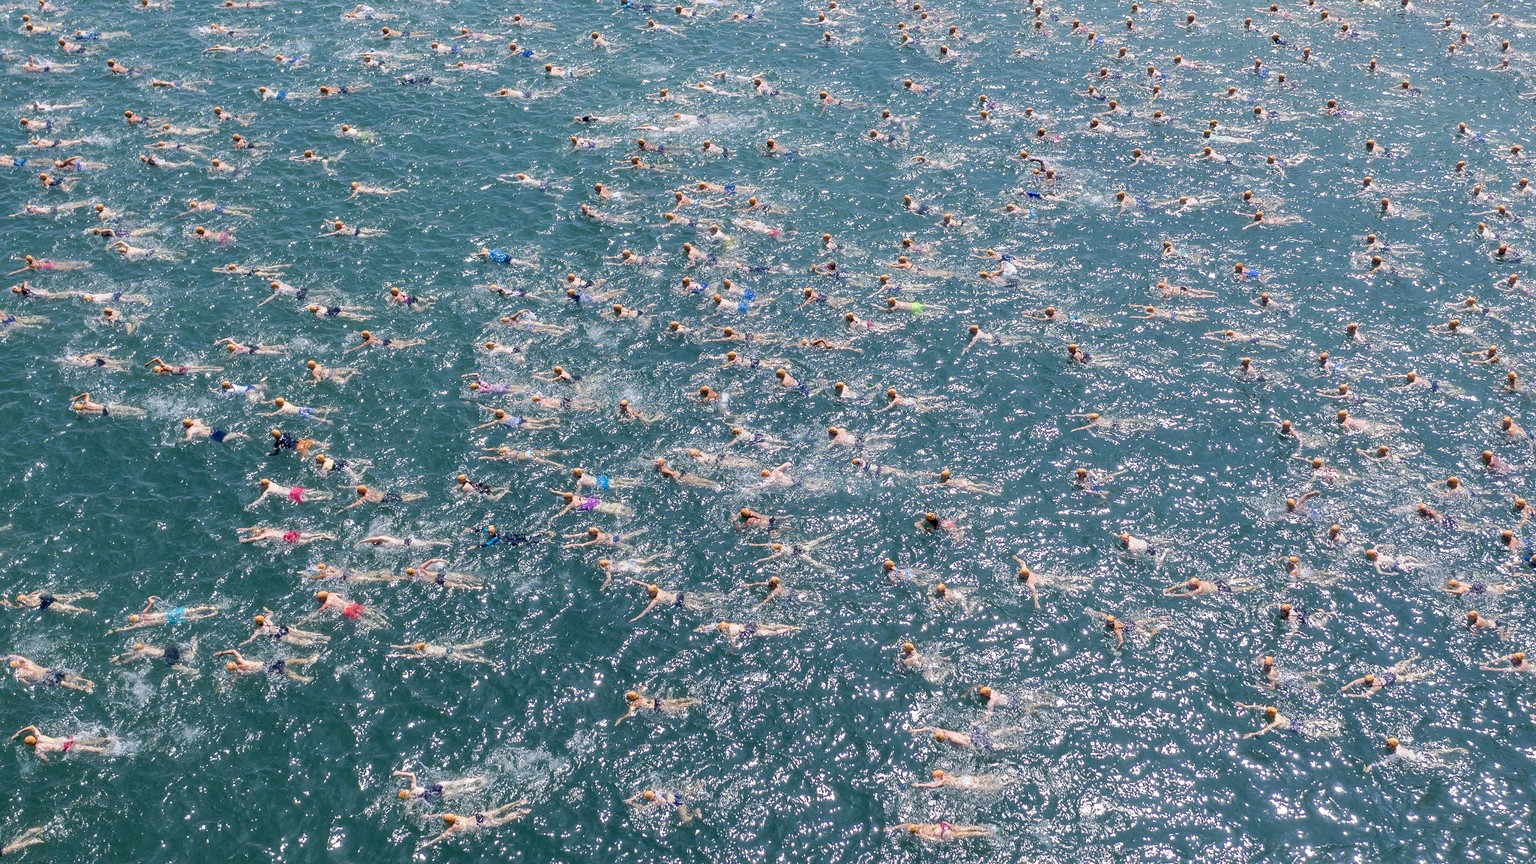 Teilnehmerinnen und Teilnehmer der Zuercher Seeueberquerung stuerzen sich bei hochsommerlichen Temperaturen in das erfrischende Wasser des Zuerichsees, aufgenommen am Mittwoch, 3. Juli 2019 in Zuerich ...